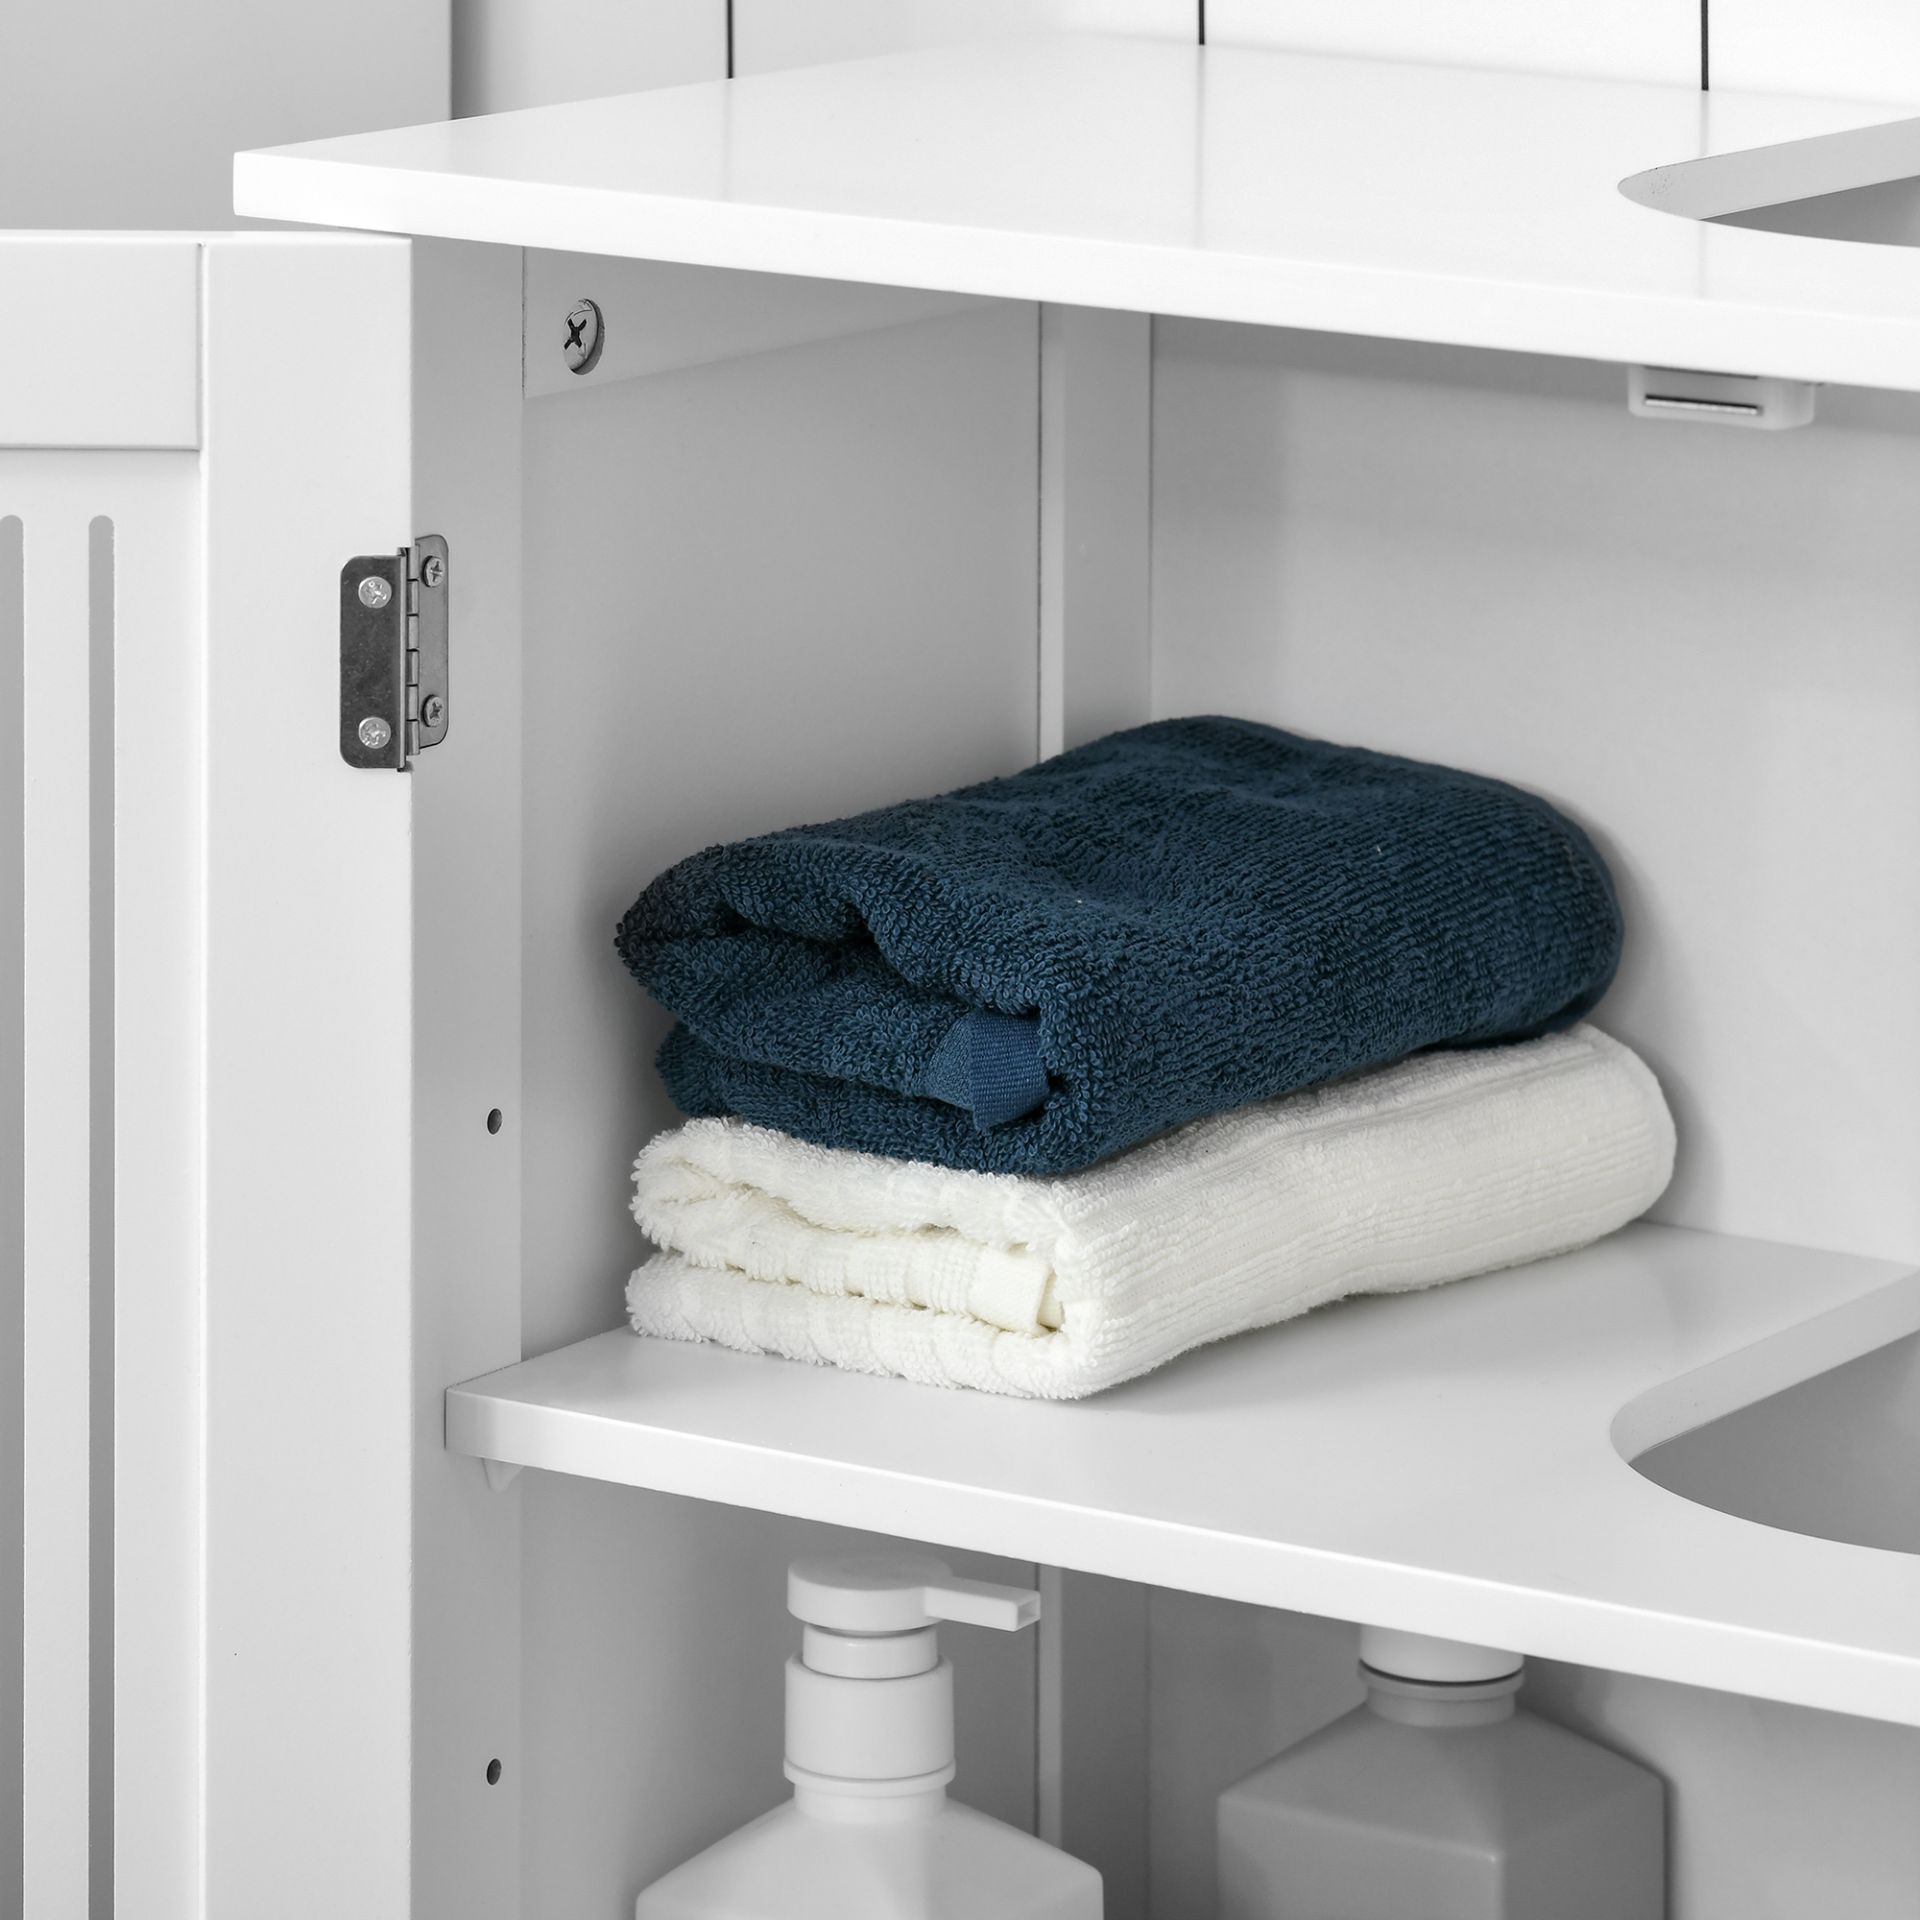 kleankin Modern Under Sink Cabinet with 2 Doors, Bathroom Vanity Unit, Pedestal Under Sink Design, Storage Cupboard with Adjustable Shelves, White